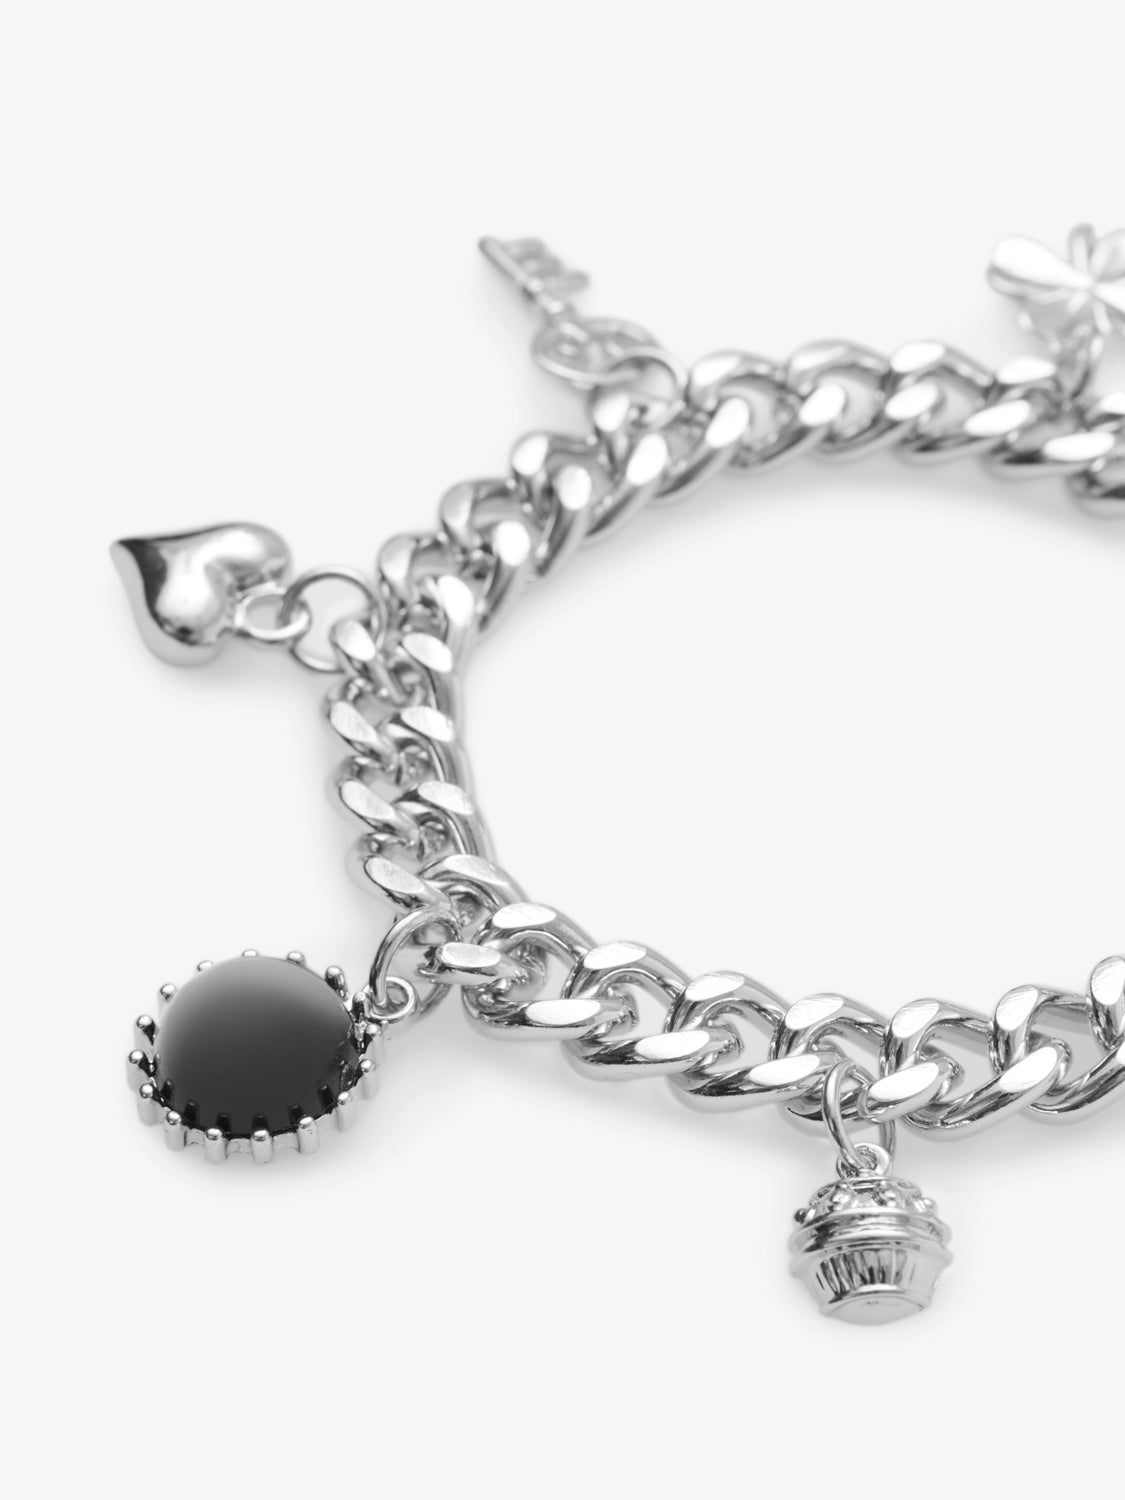 VIJESSY Bracelets - Silver Colour